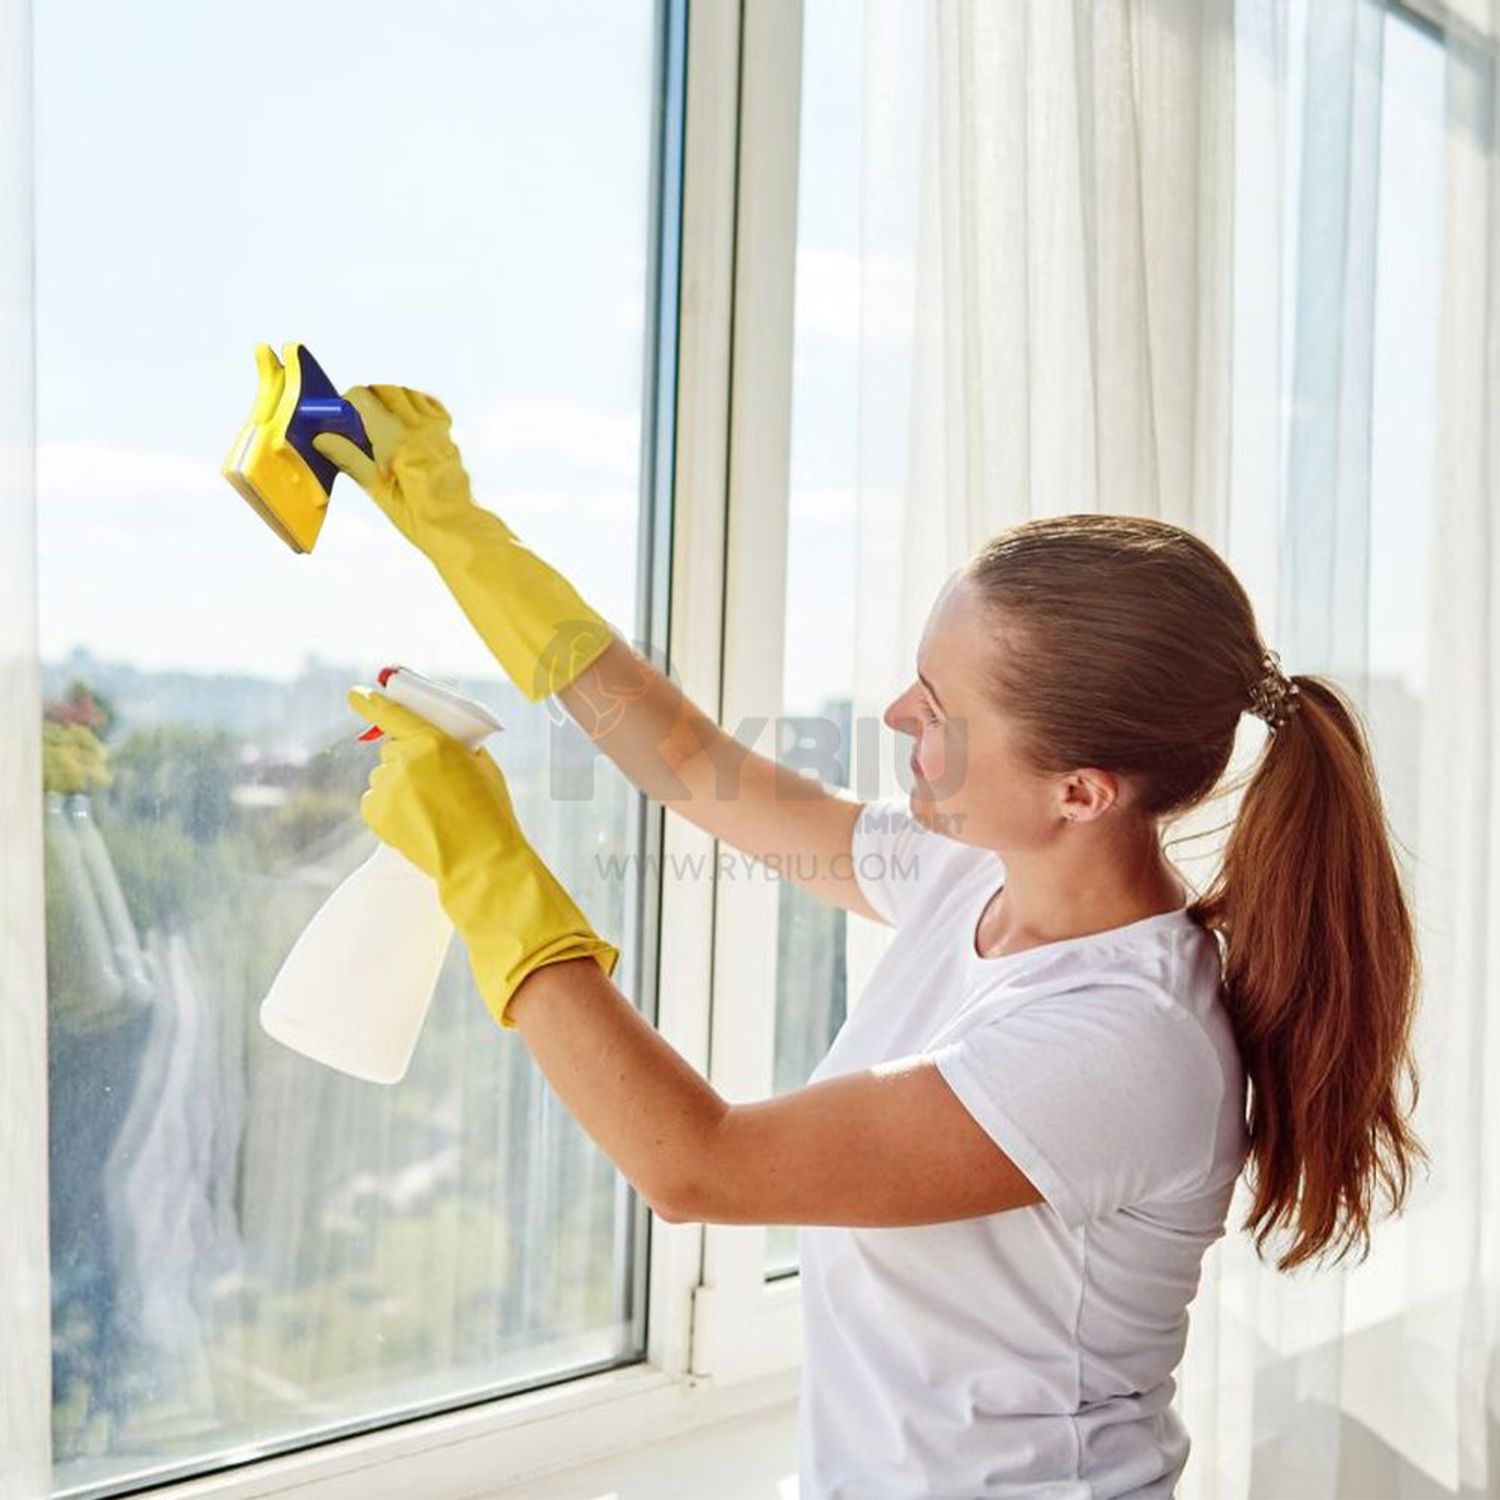 Limpiar vidrios por fuera - Accesorios para ventanas